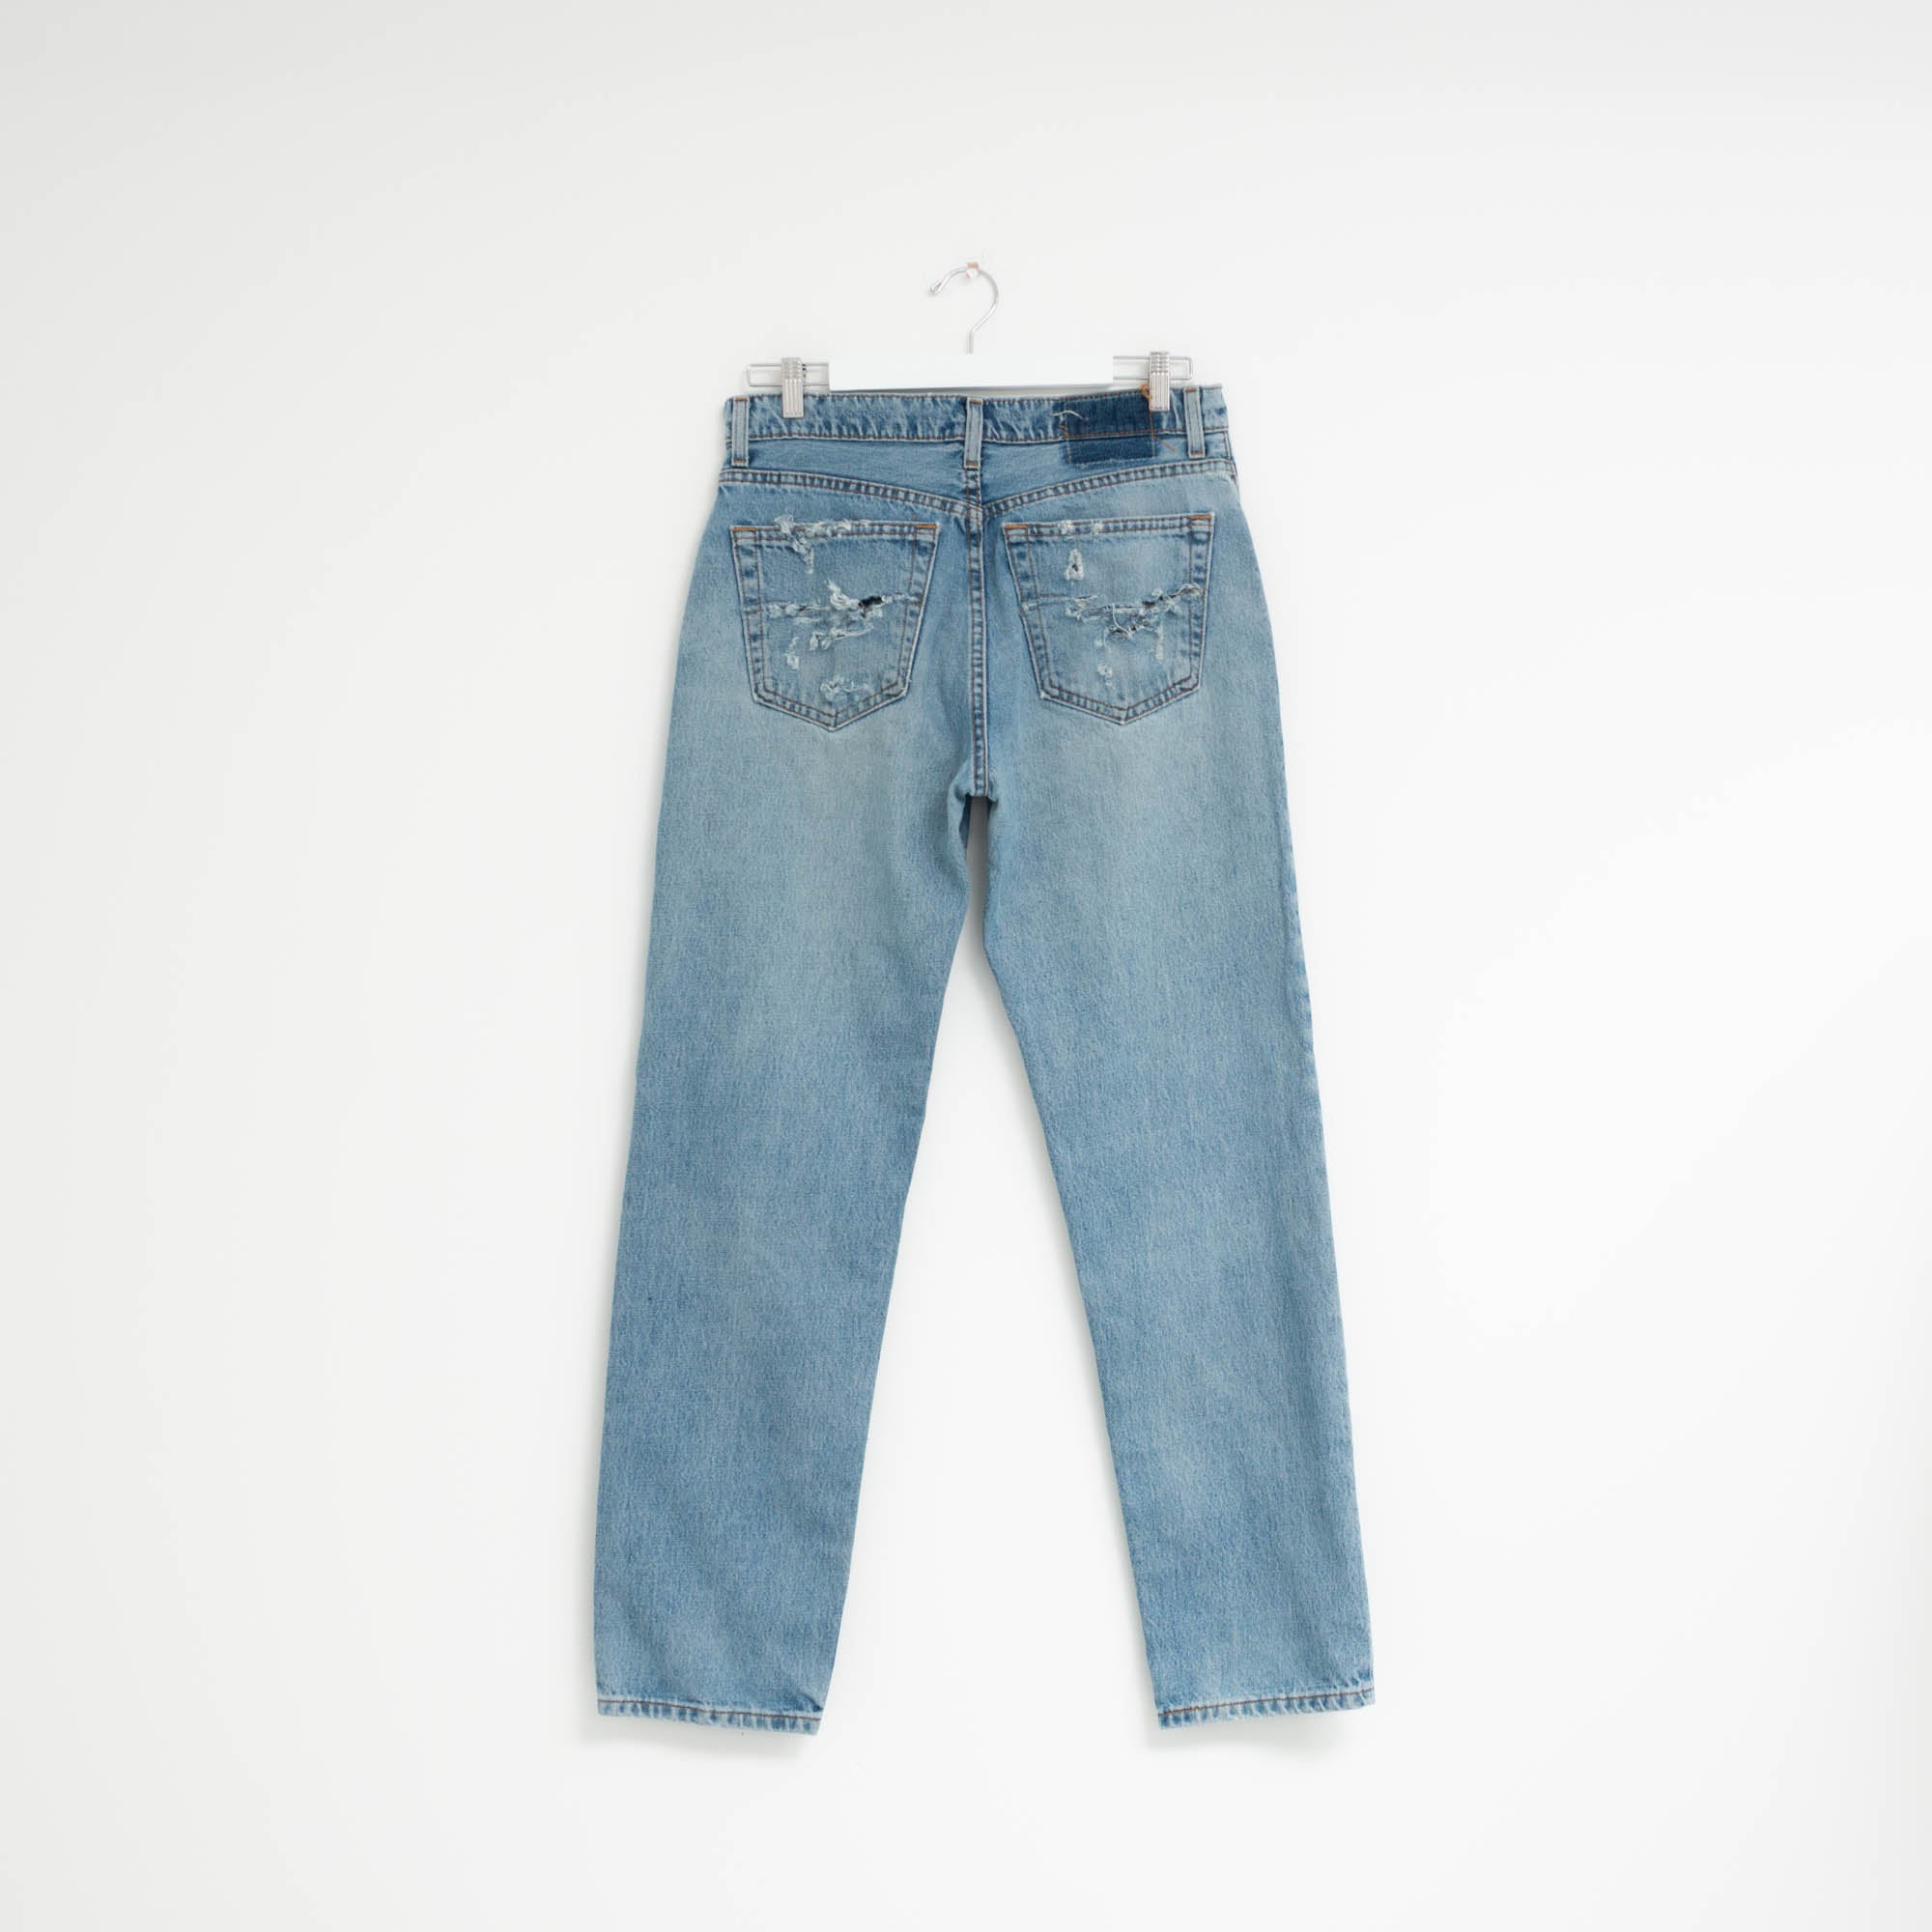 "DISTRESSED" Jeans W33 L32